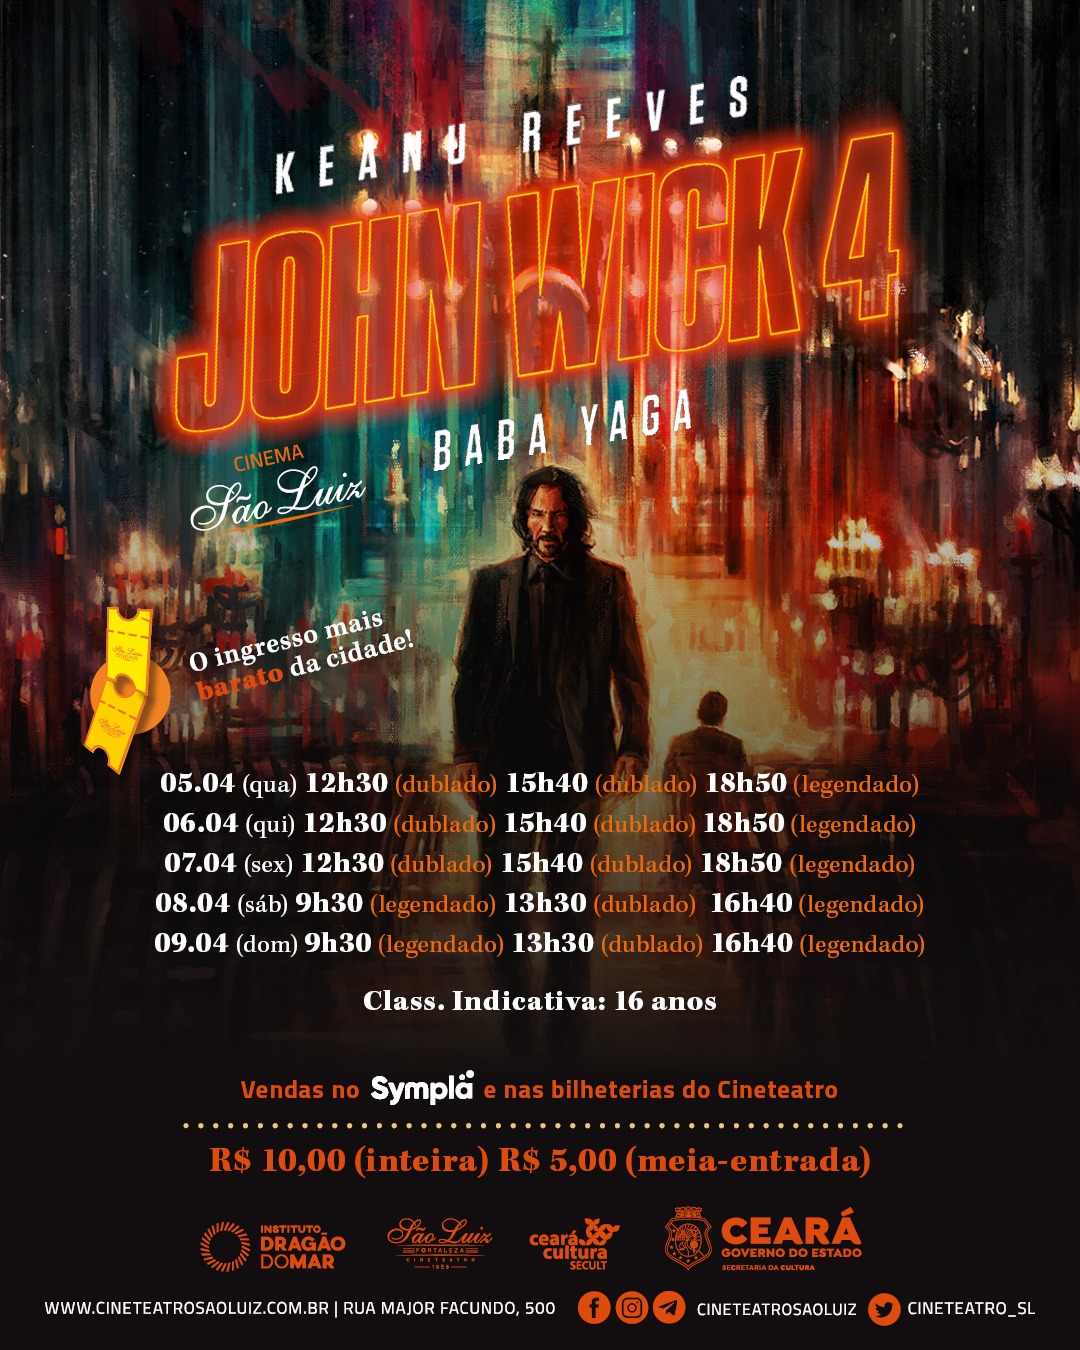 Assistir John Wick 2 filme completo Dublado online legendado 2017